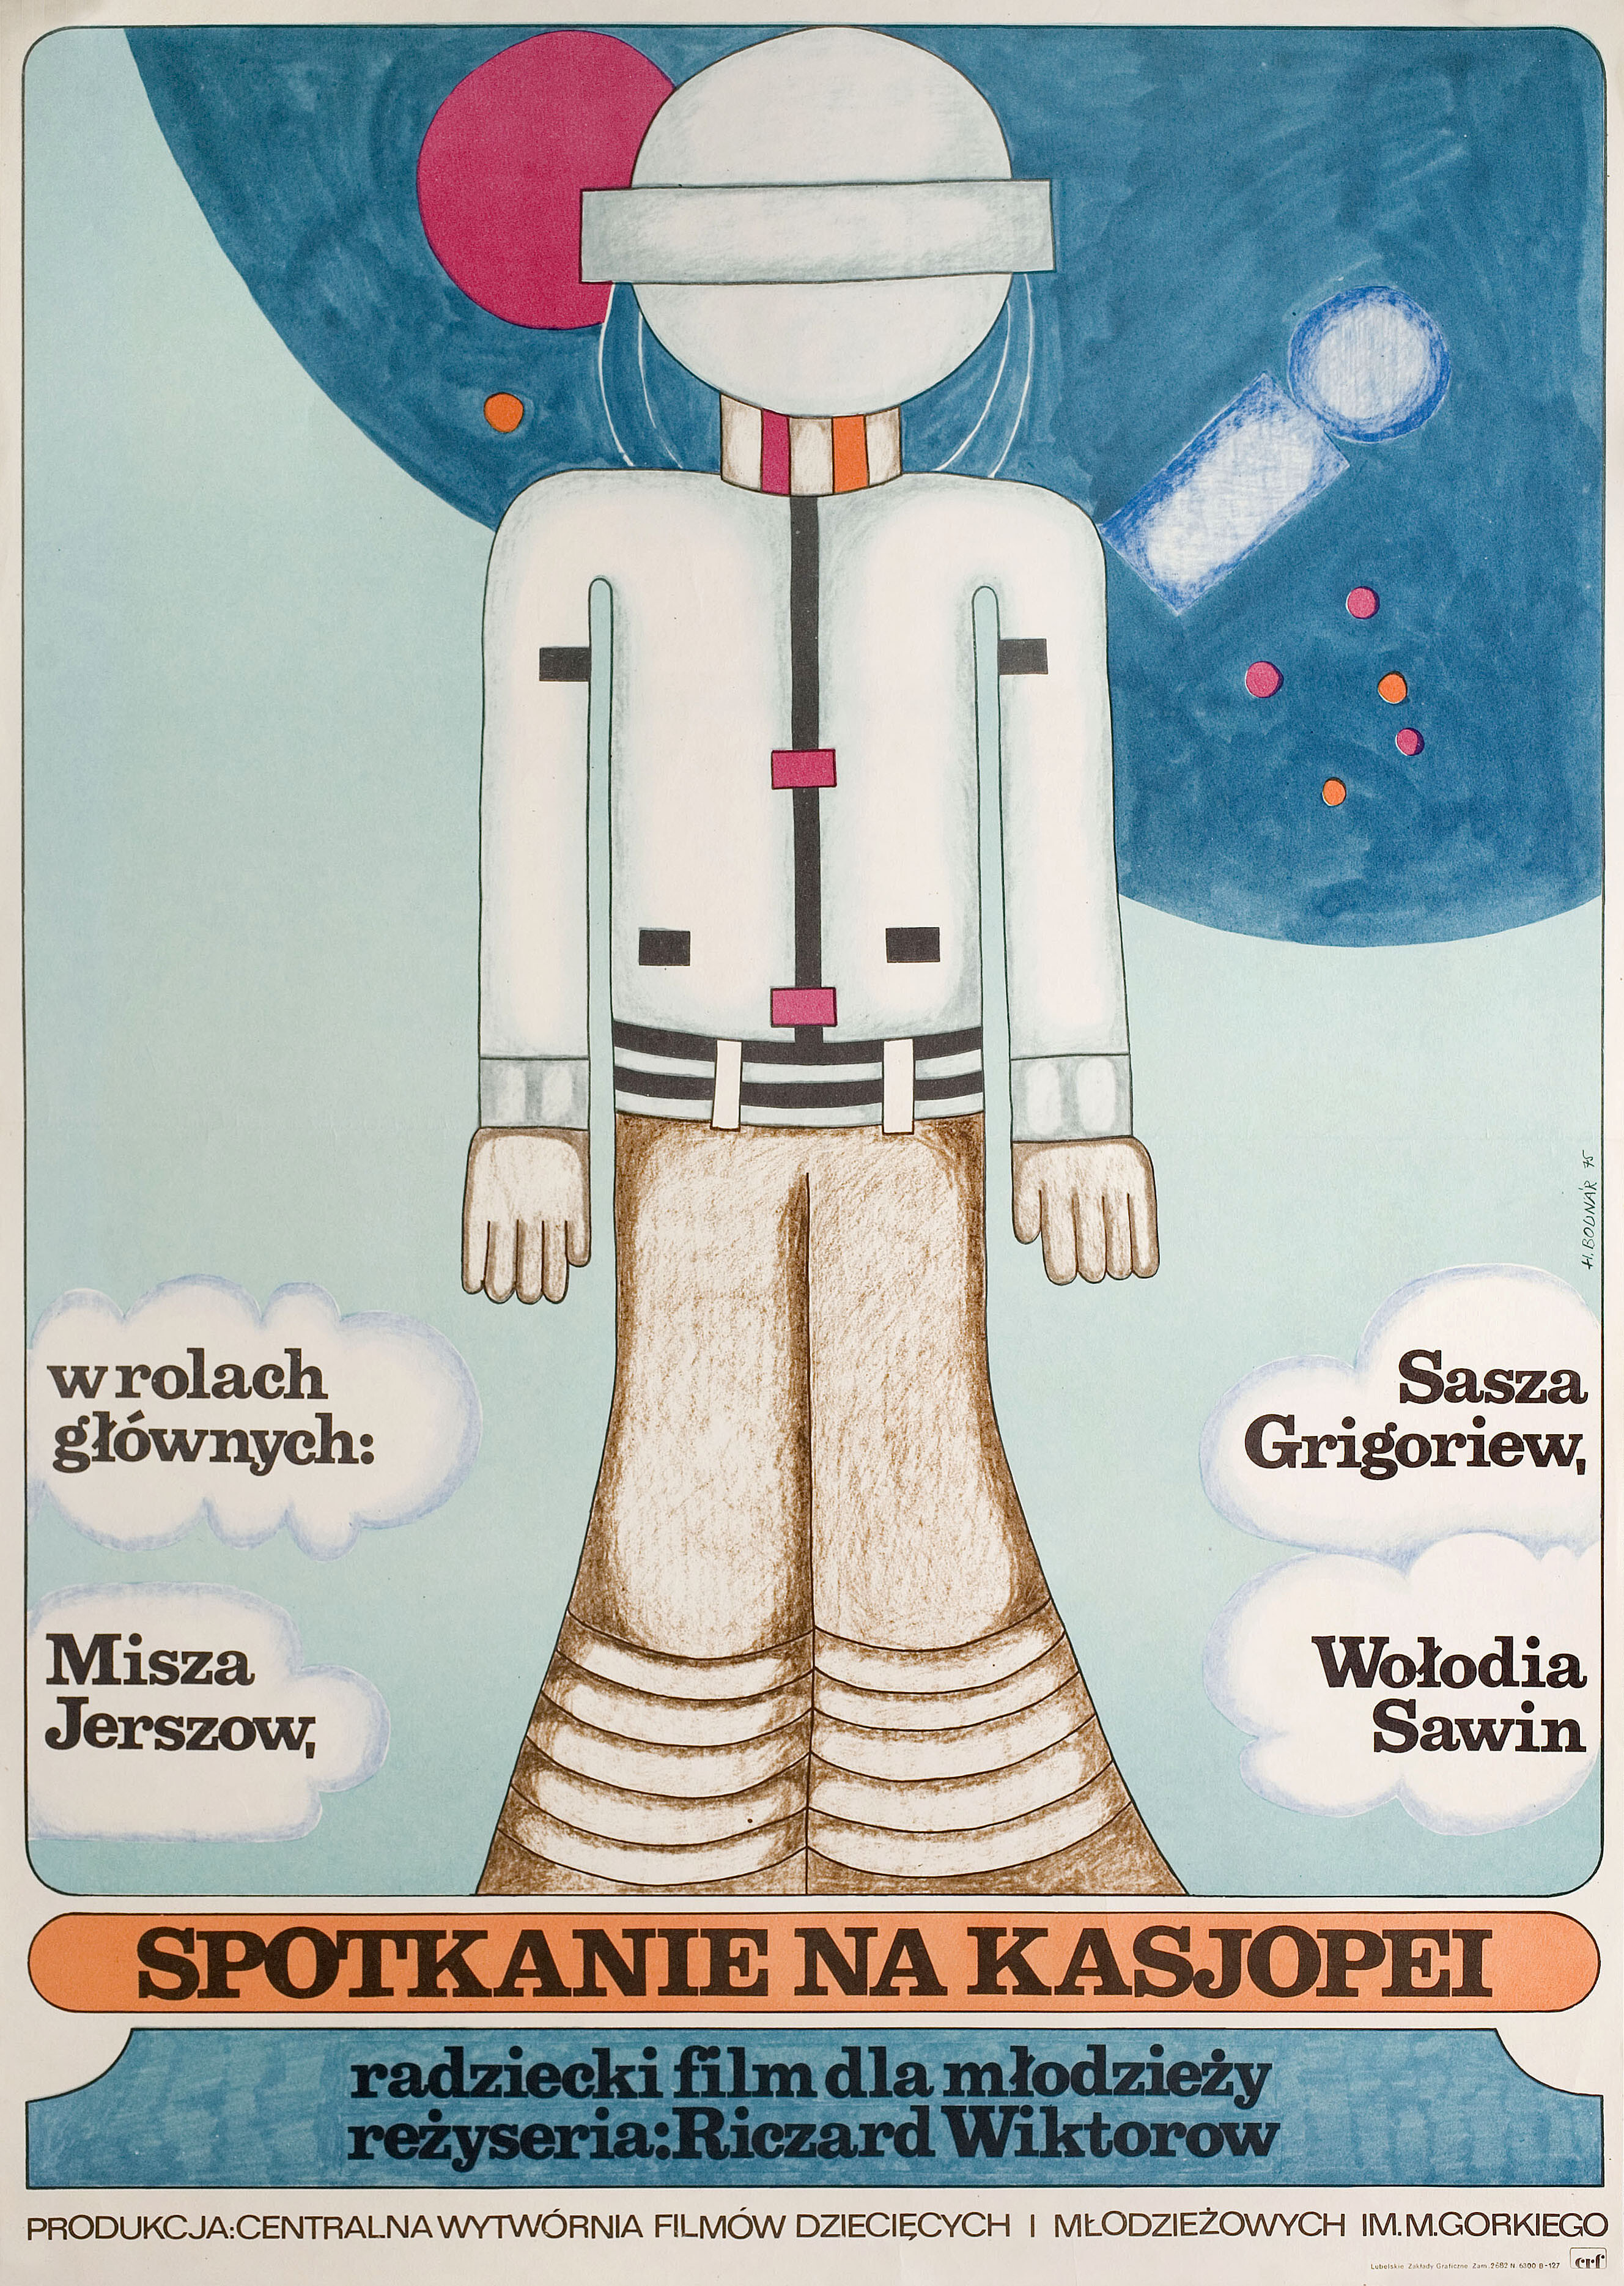 Отроки во Вселенной (режиссёр Ричард Викторов, 1975), польский постер к фильму, автор Ханна Боднар, 1975 год